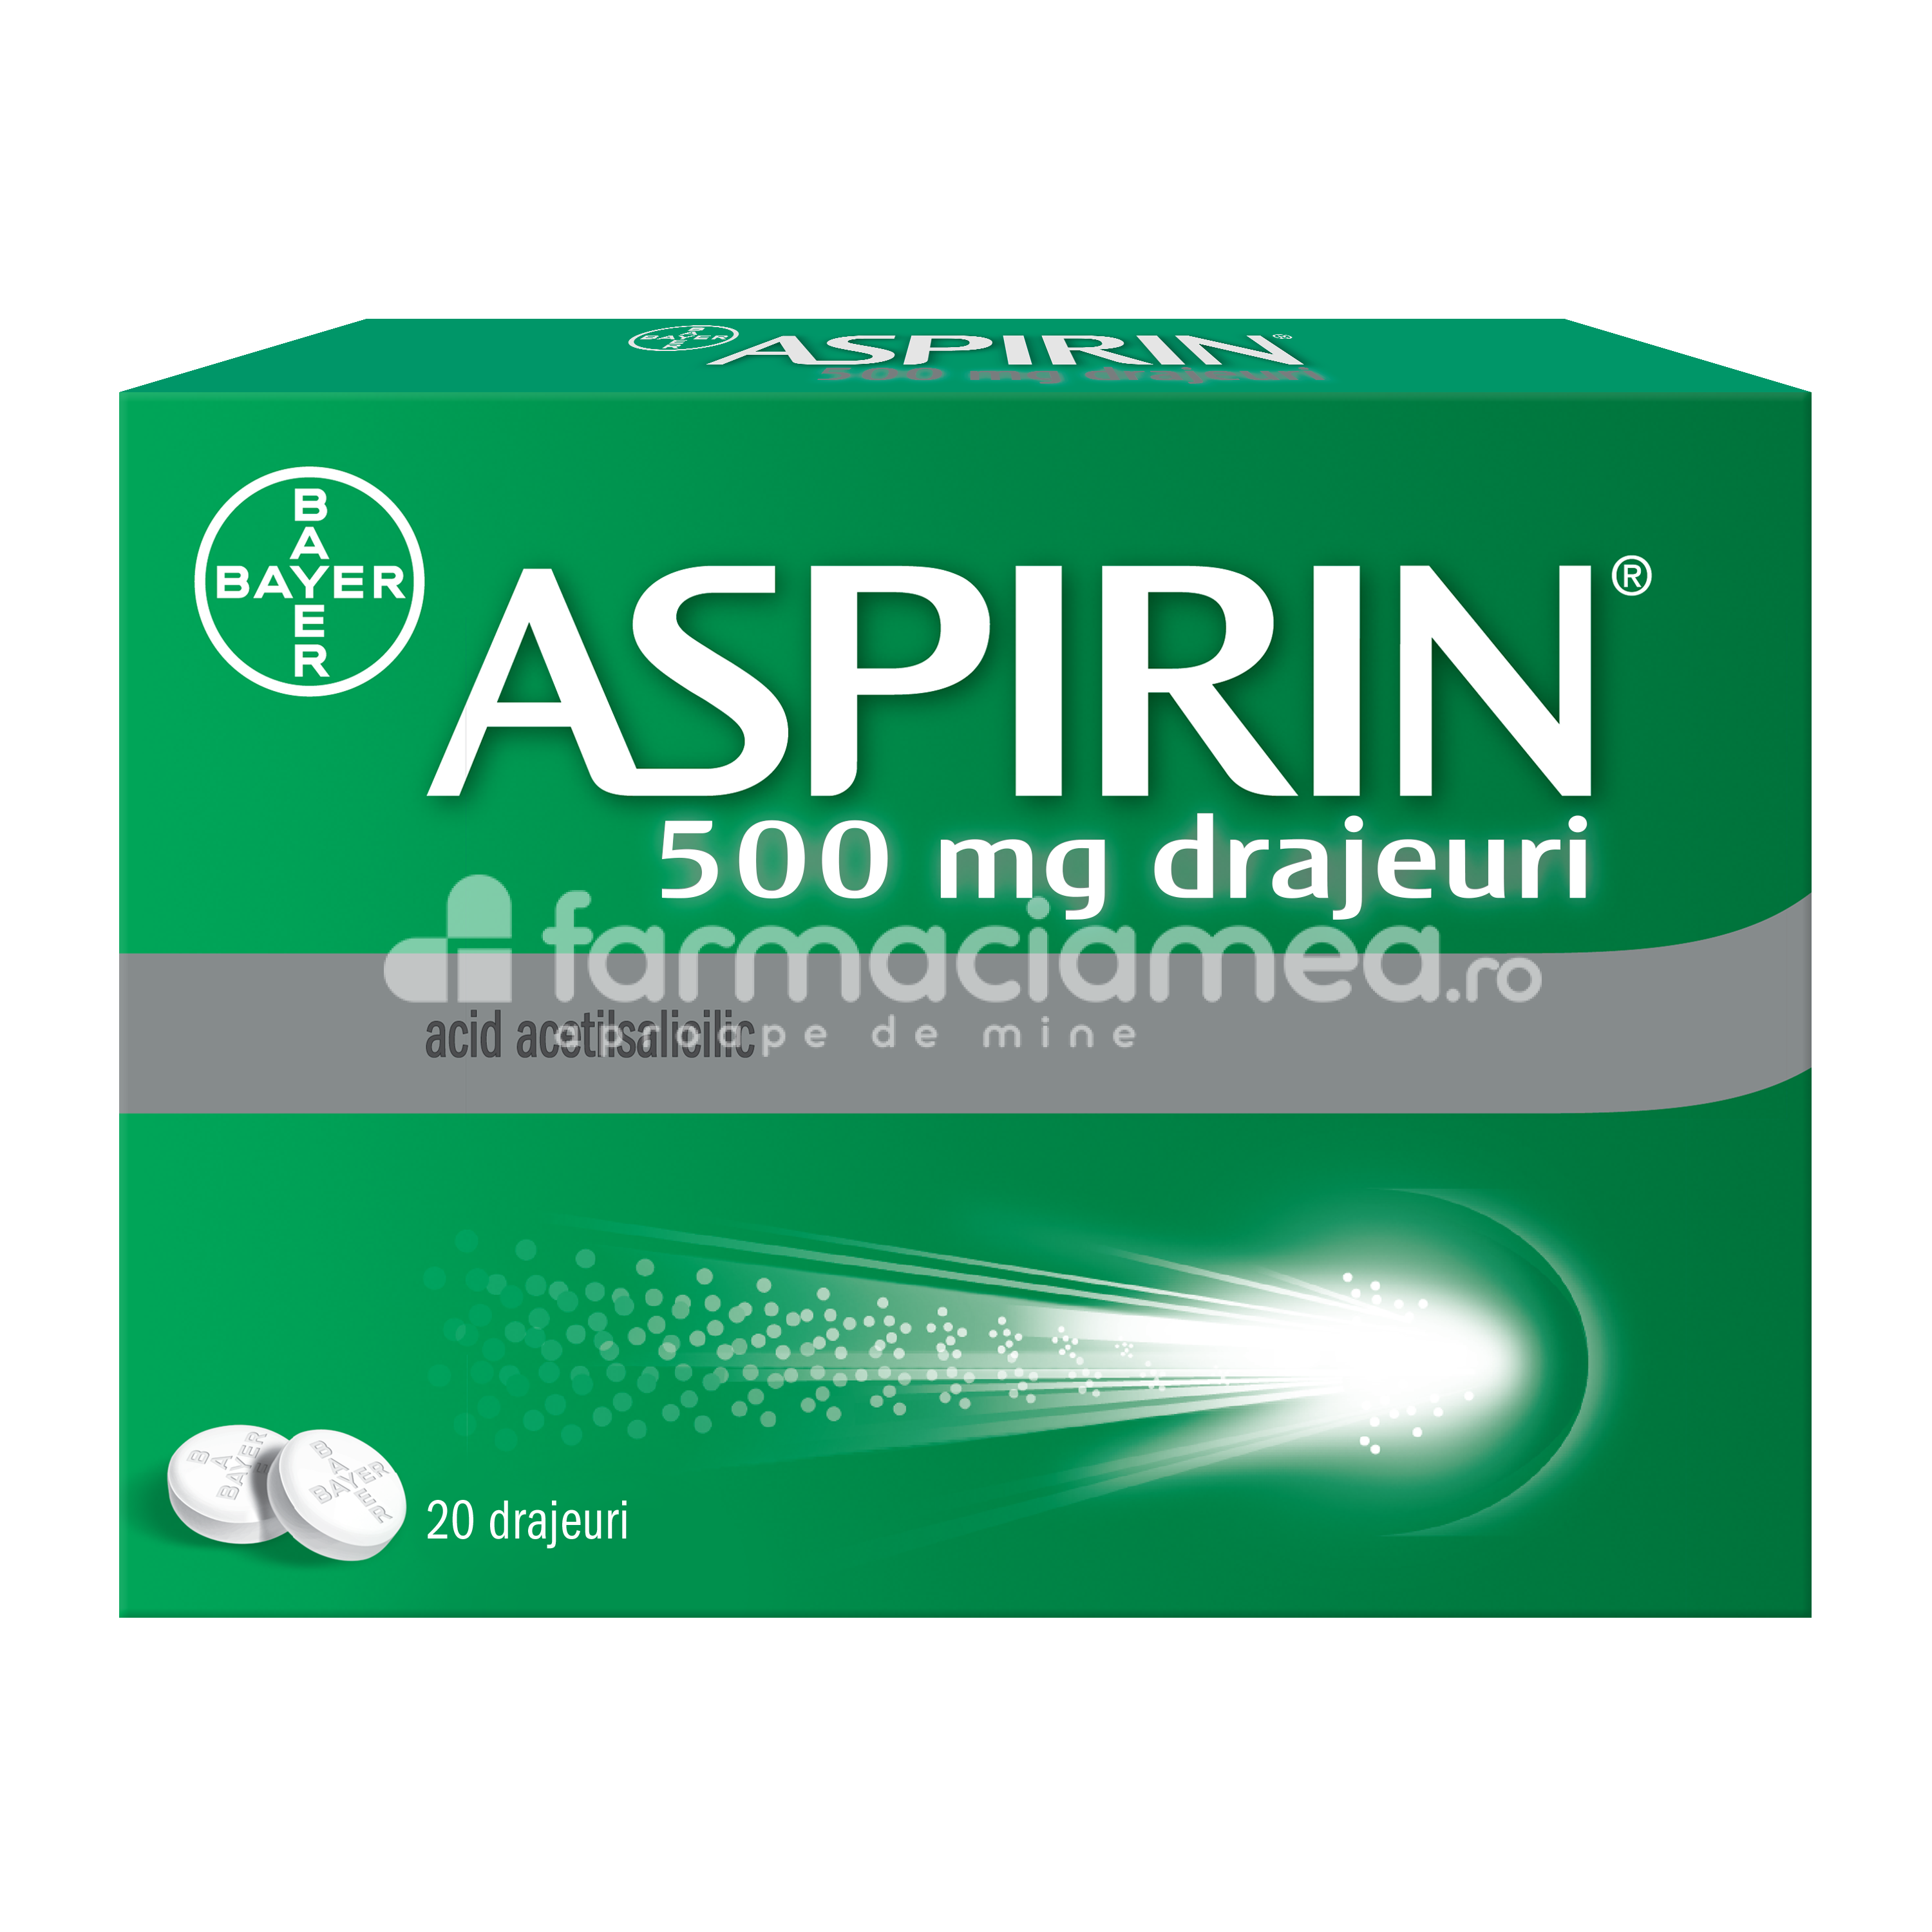 Durere OTC - Aspirin 500 mg, contine acid acetilsalicilic, cu efect analgezic si antipiretic, indicat in reducerea durerii si scaderea febrei, de la 16 ani, 20 de drajeuri, Bayer, farmaciamea.ro